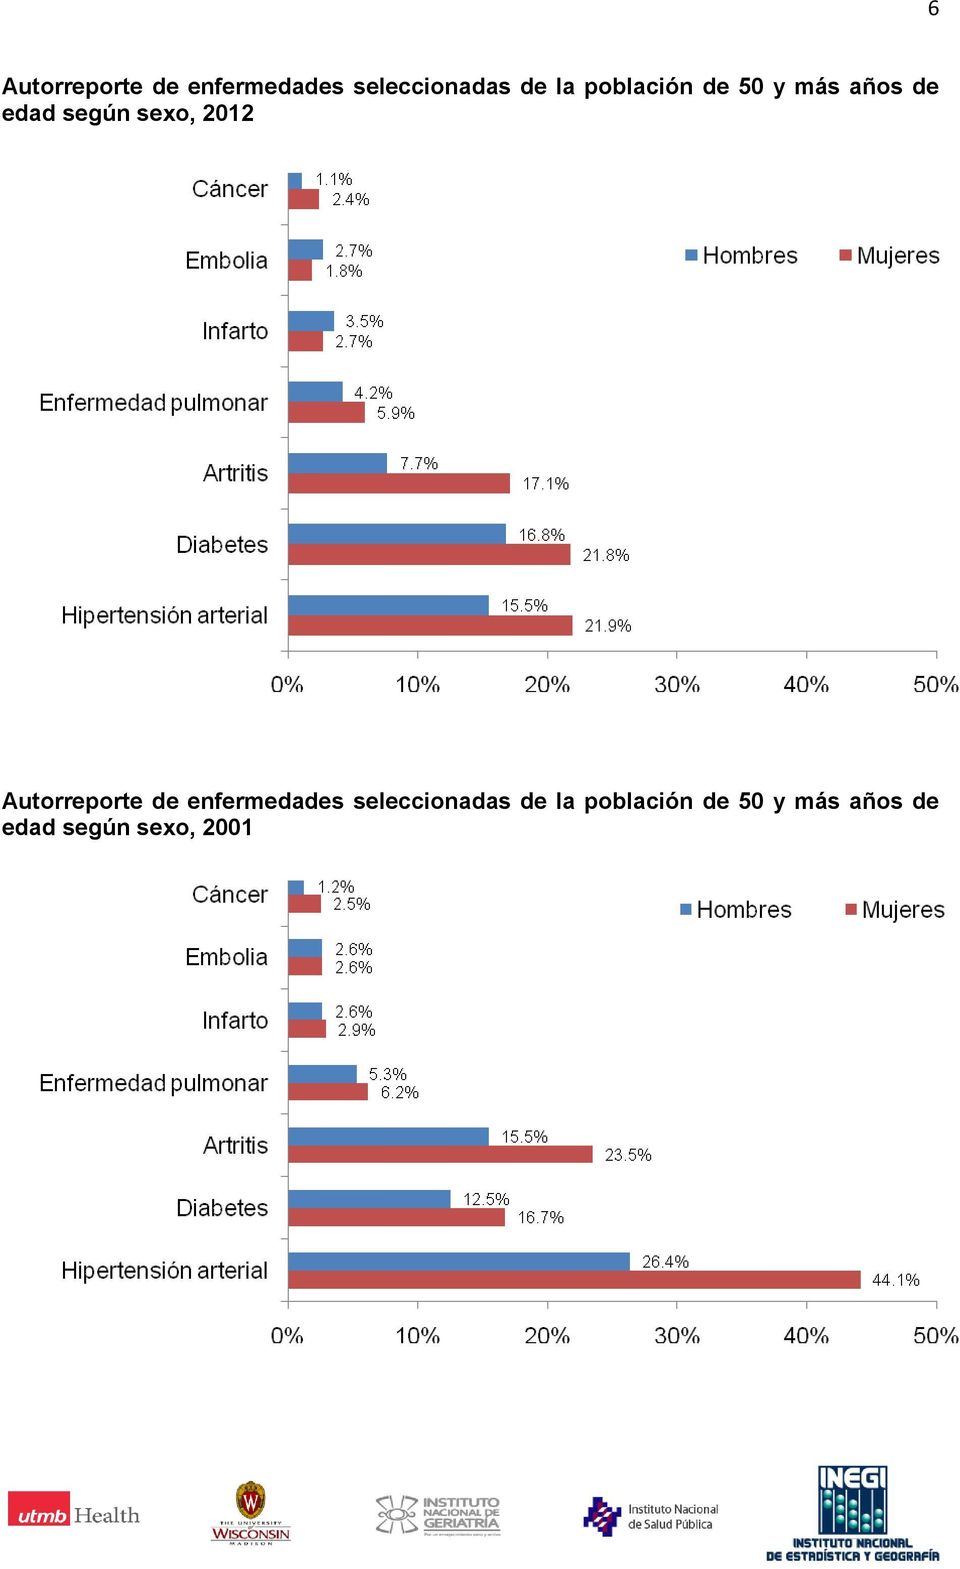 2012 Autorreporte de enfermedades seleccionadas de